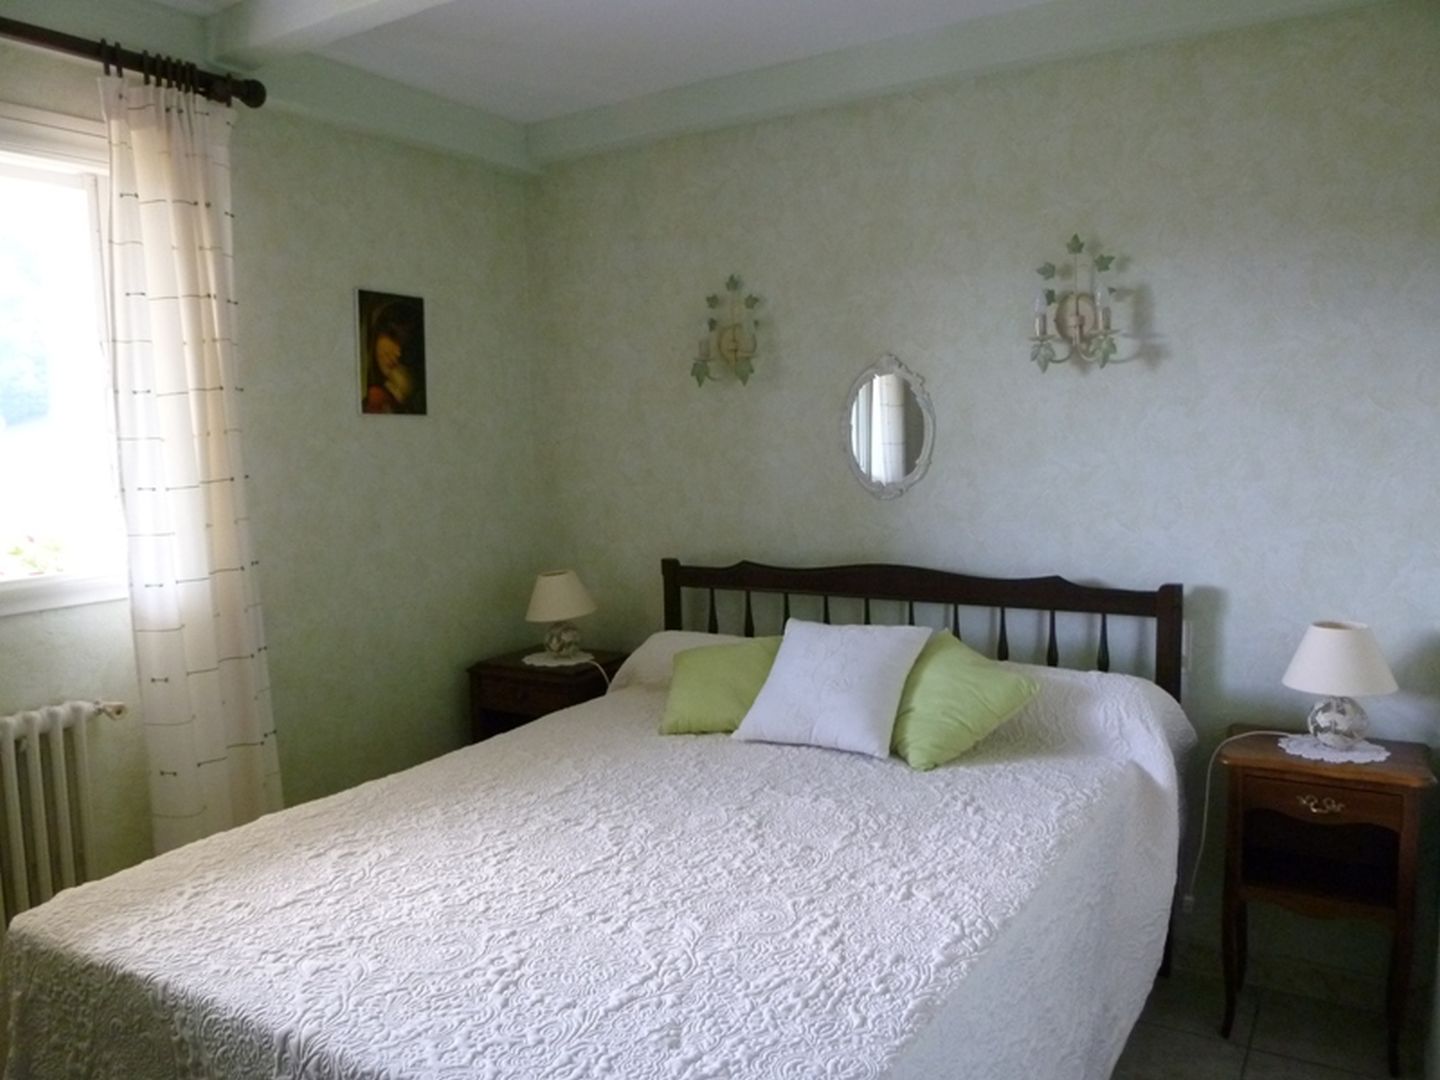 Location Zaldua - 14 - Chambre lit double vert - St Etienne de Baïgorry 